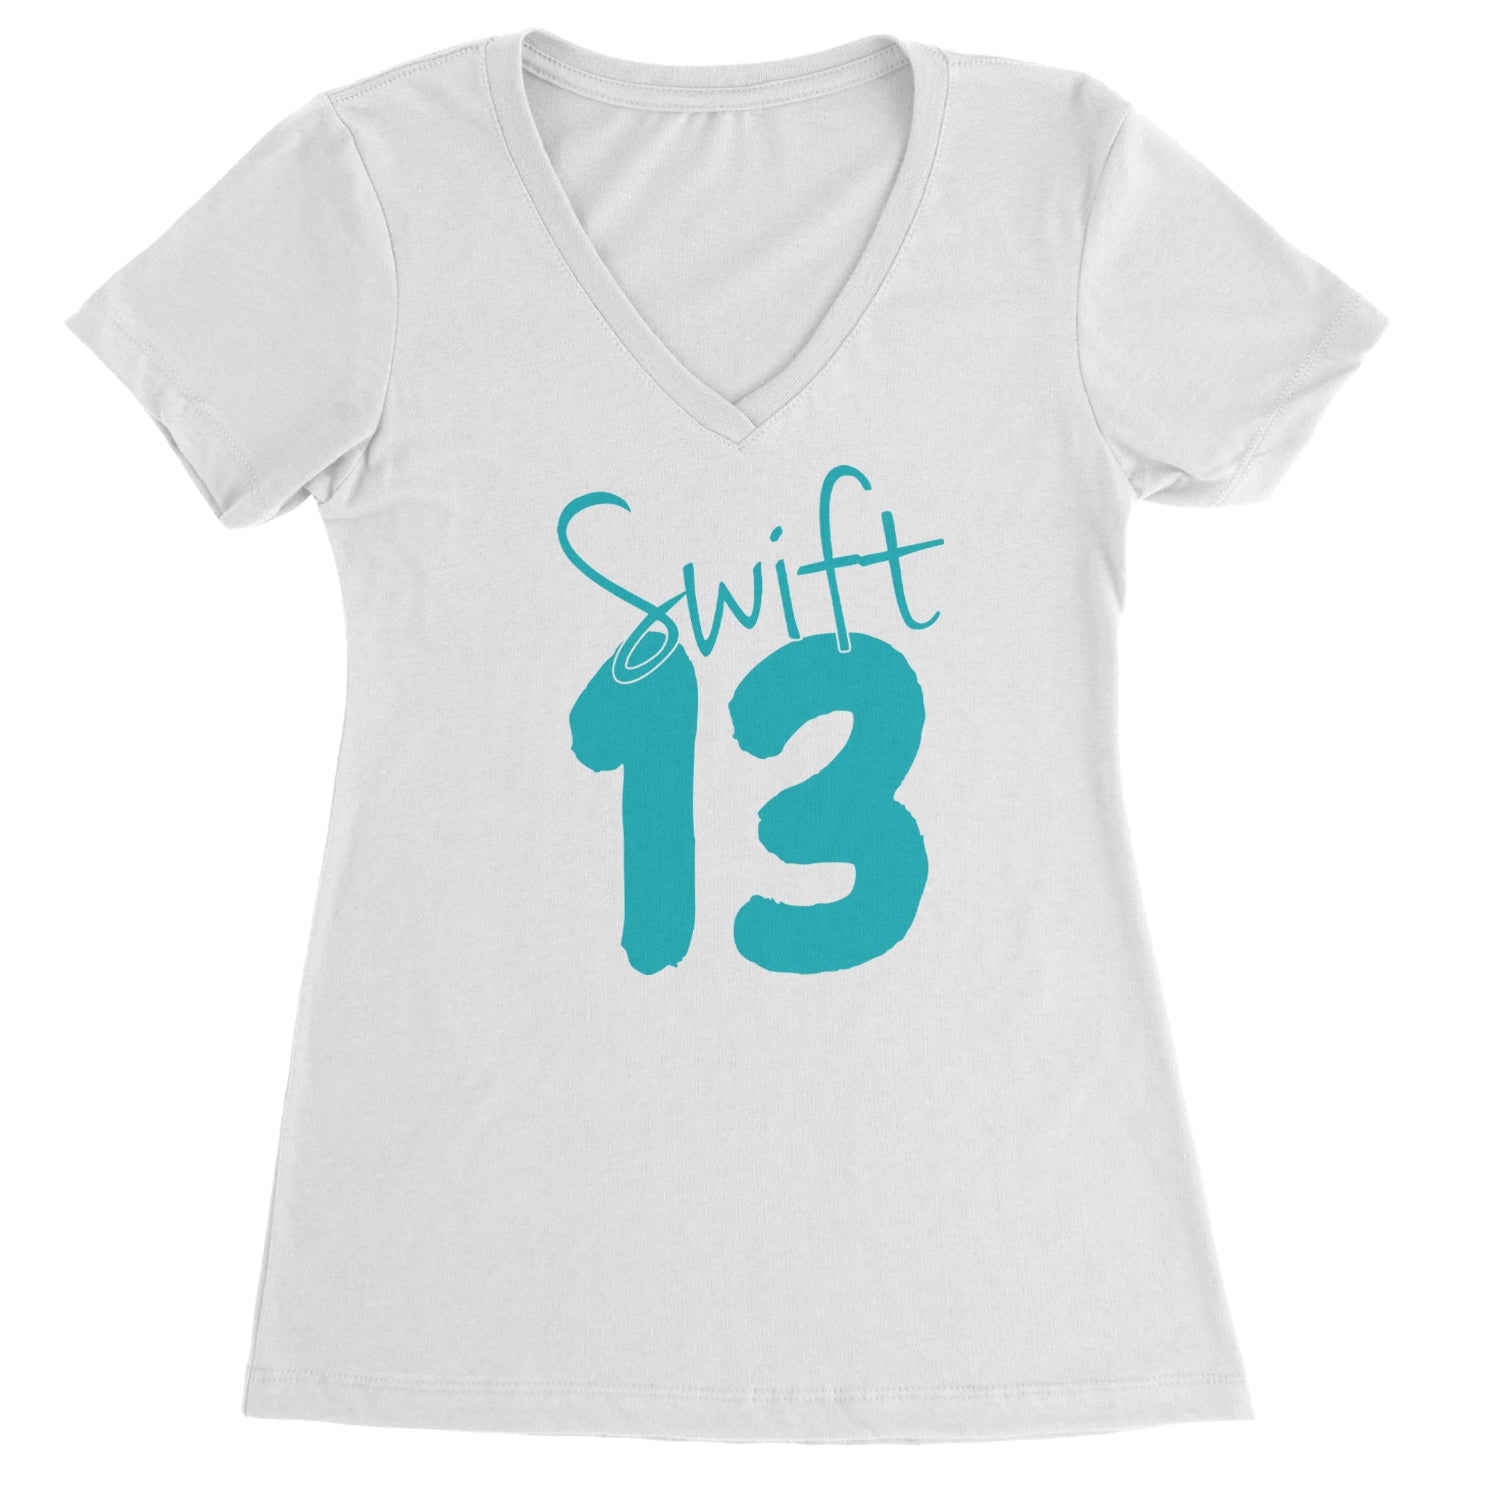 13 Swift 13 Lucky Number Era TTPD Ladies V-Neck T-shirt White